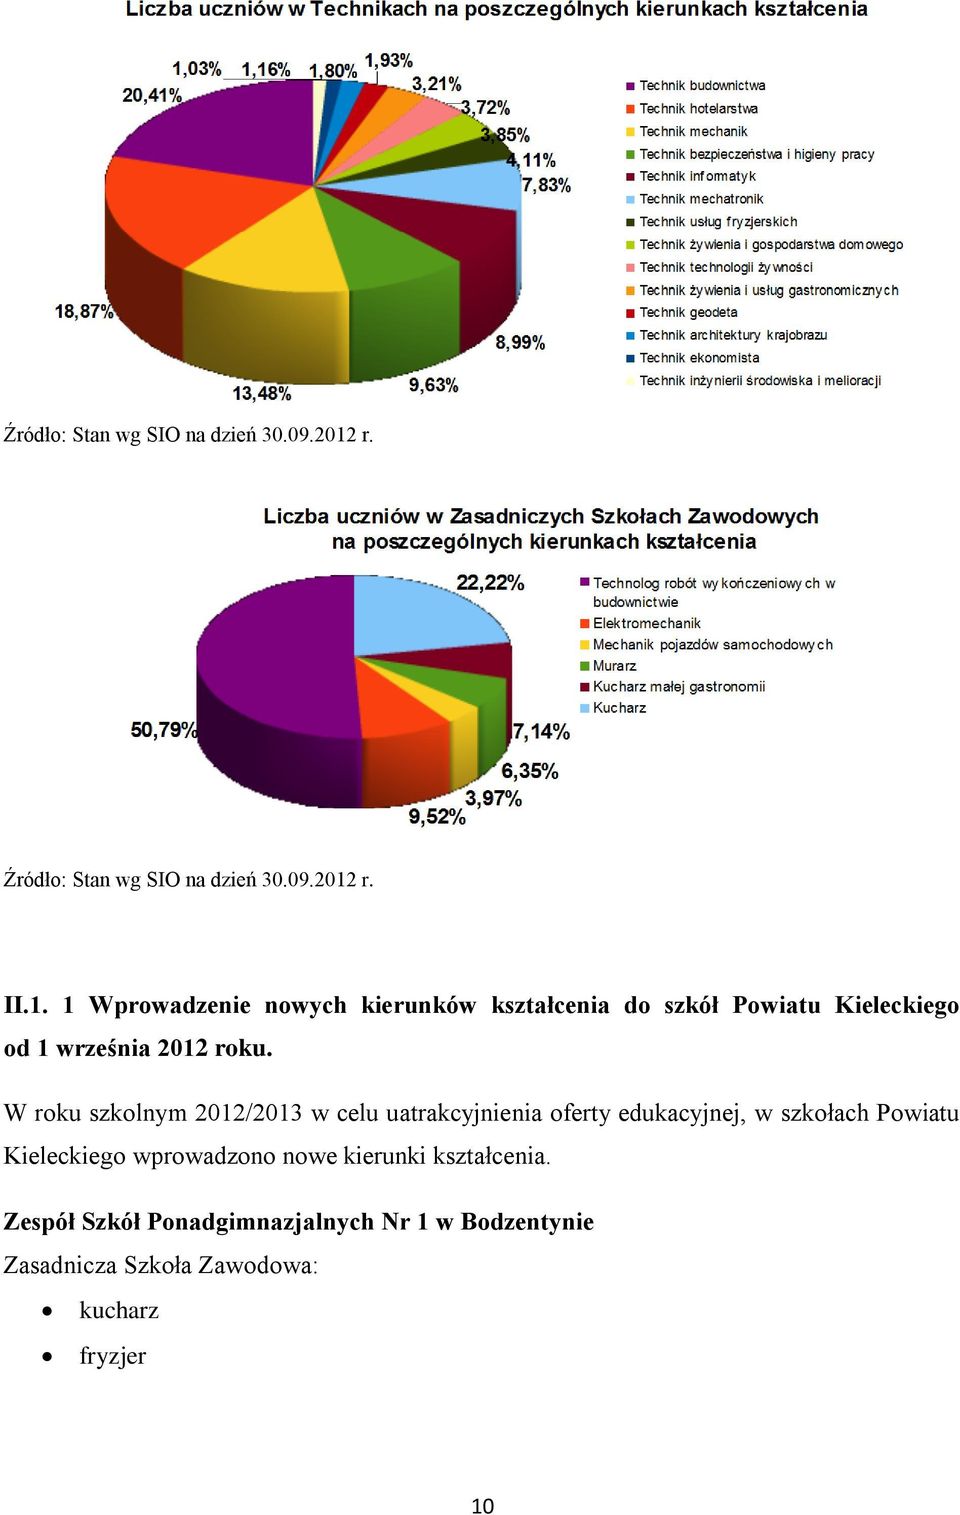 1 Wprowadzenie nowych kierunków kształcenia do szkół Powiatu Kieleckiego od 1 września 2012 roku.